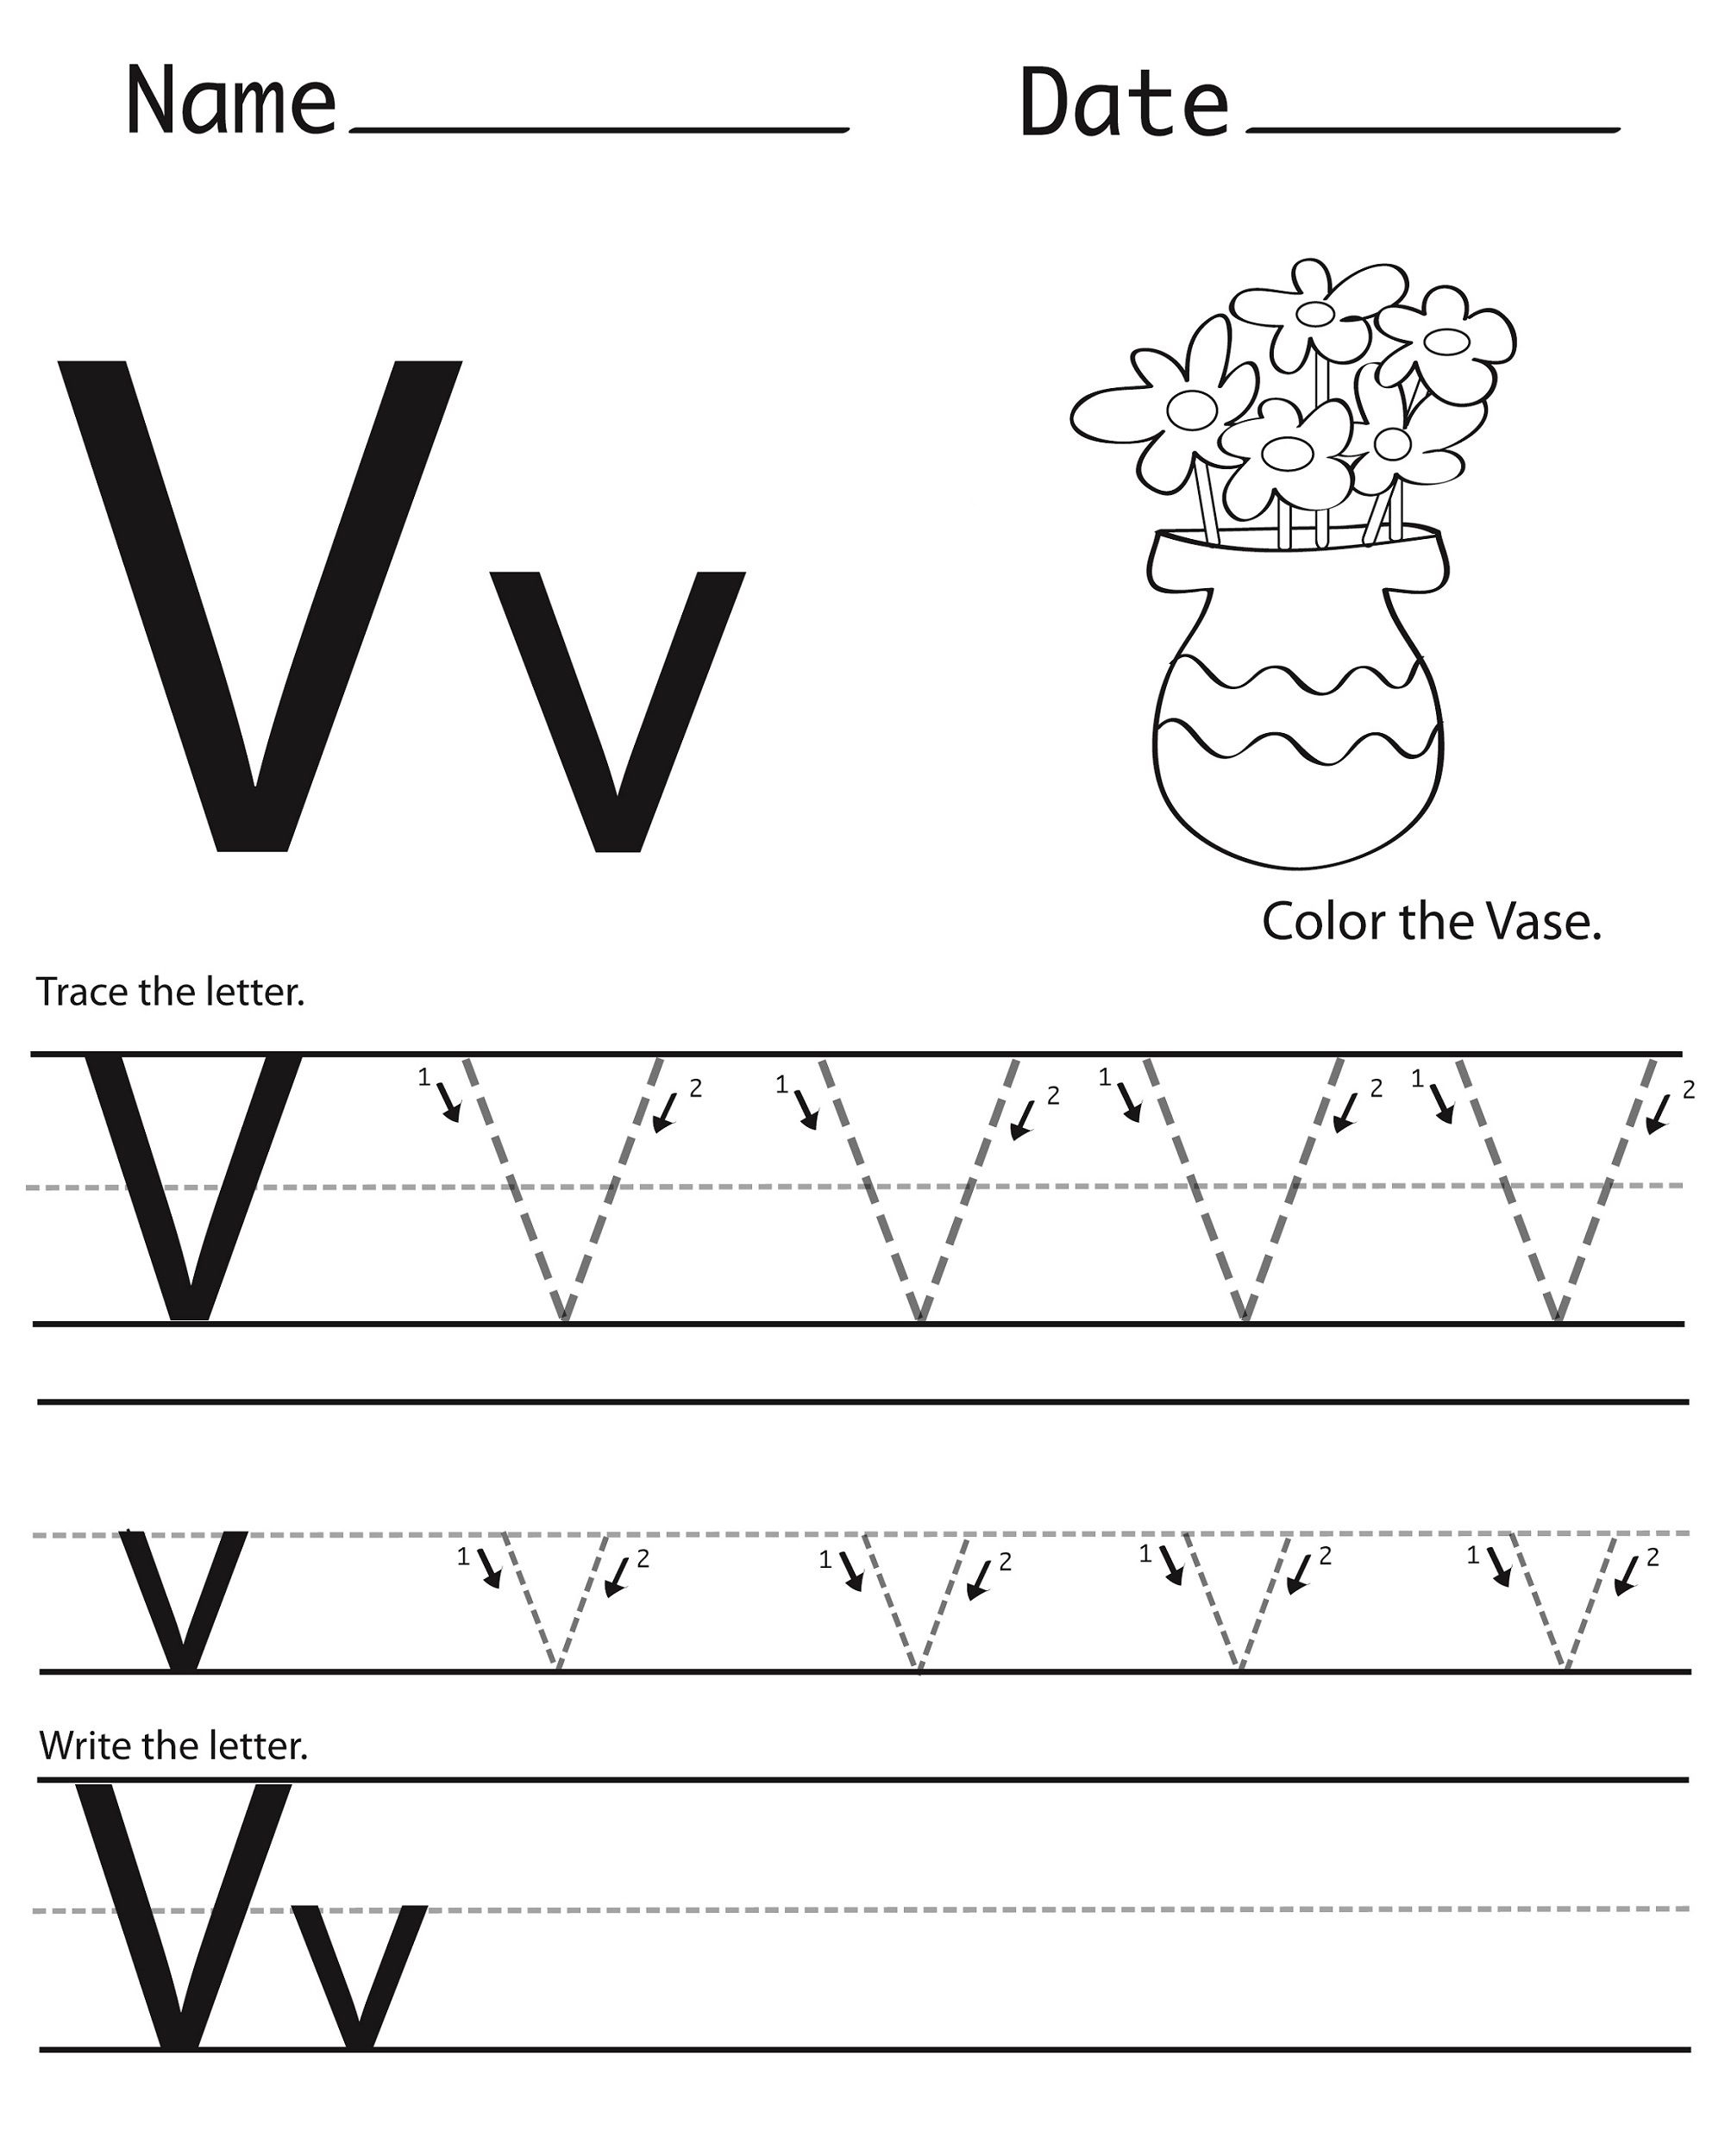 Letter V Worksheets | Letter V Worksheets, Free Handwriting inside Letter V Worksheets Free